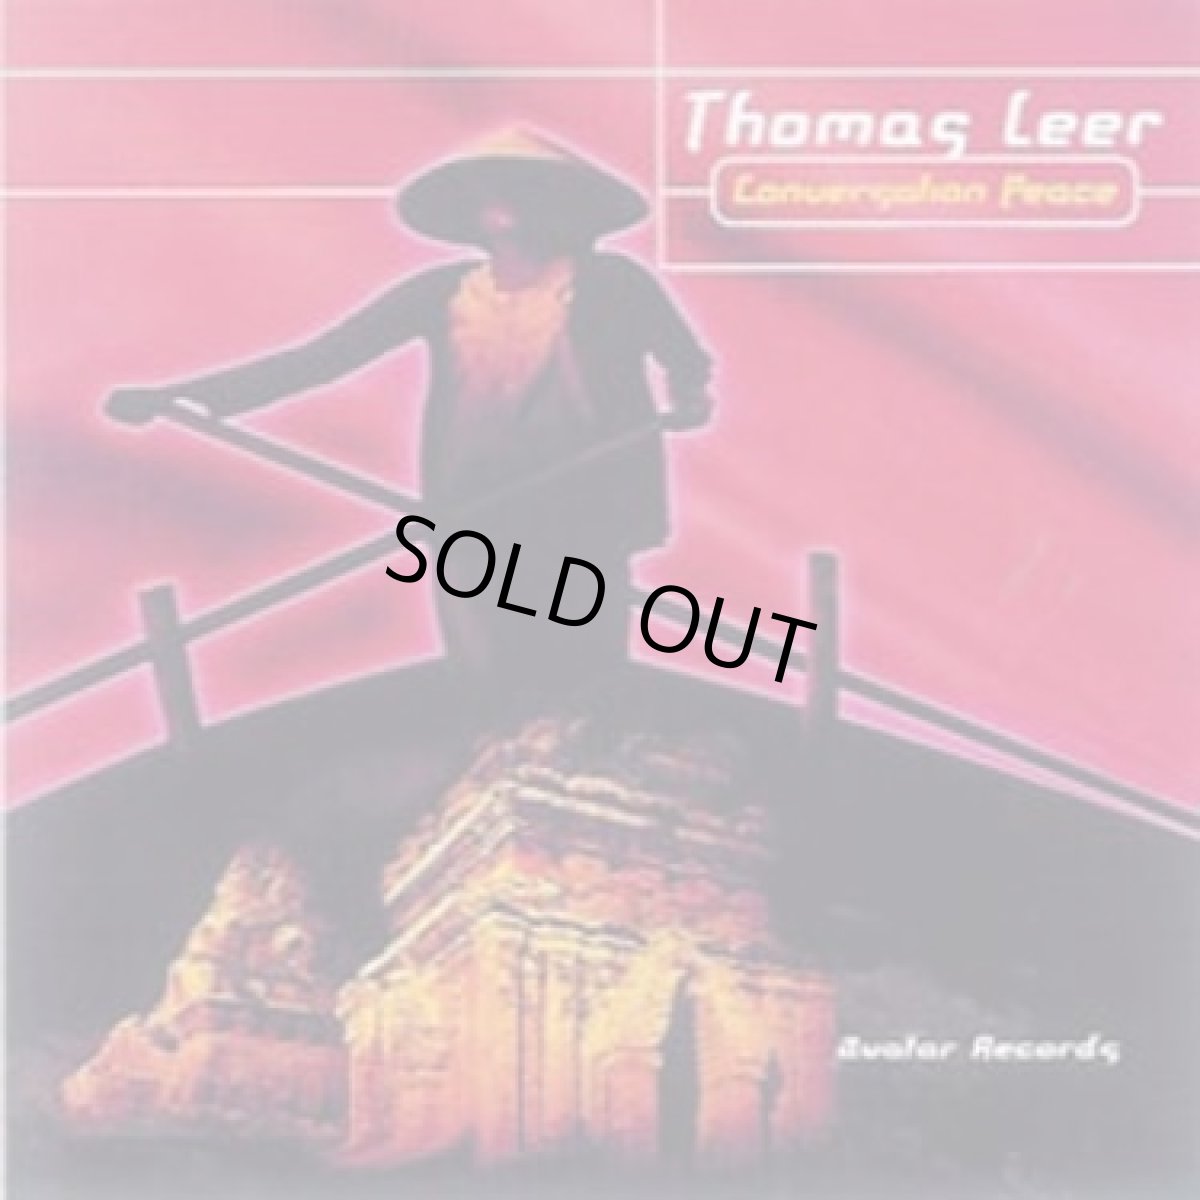 画像1: CD「Thomas Leer / Conversation Peace」【ラウンジ・チルアウト】 (1)